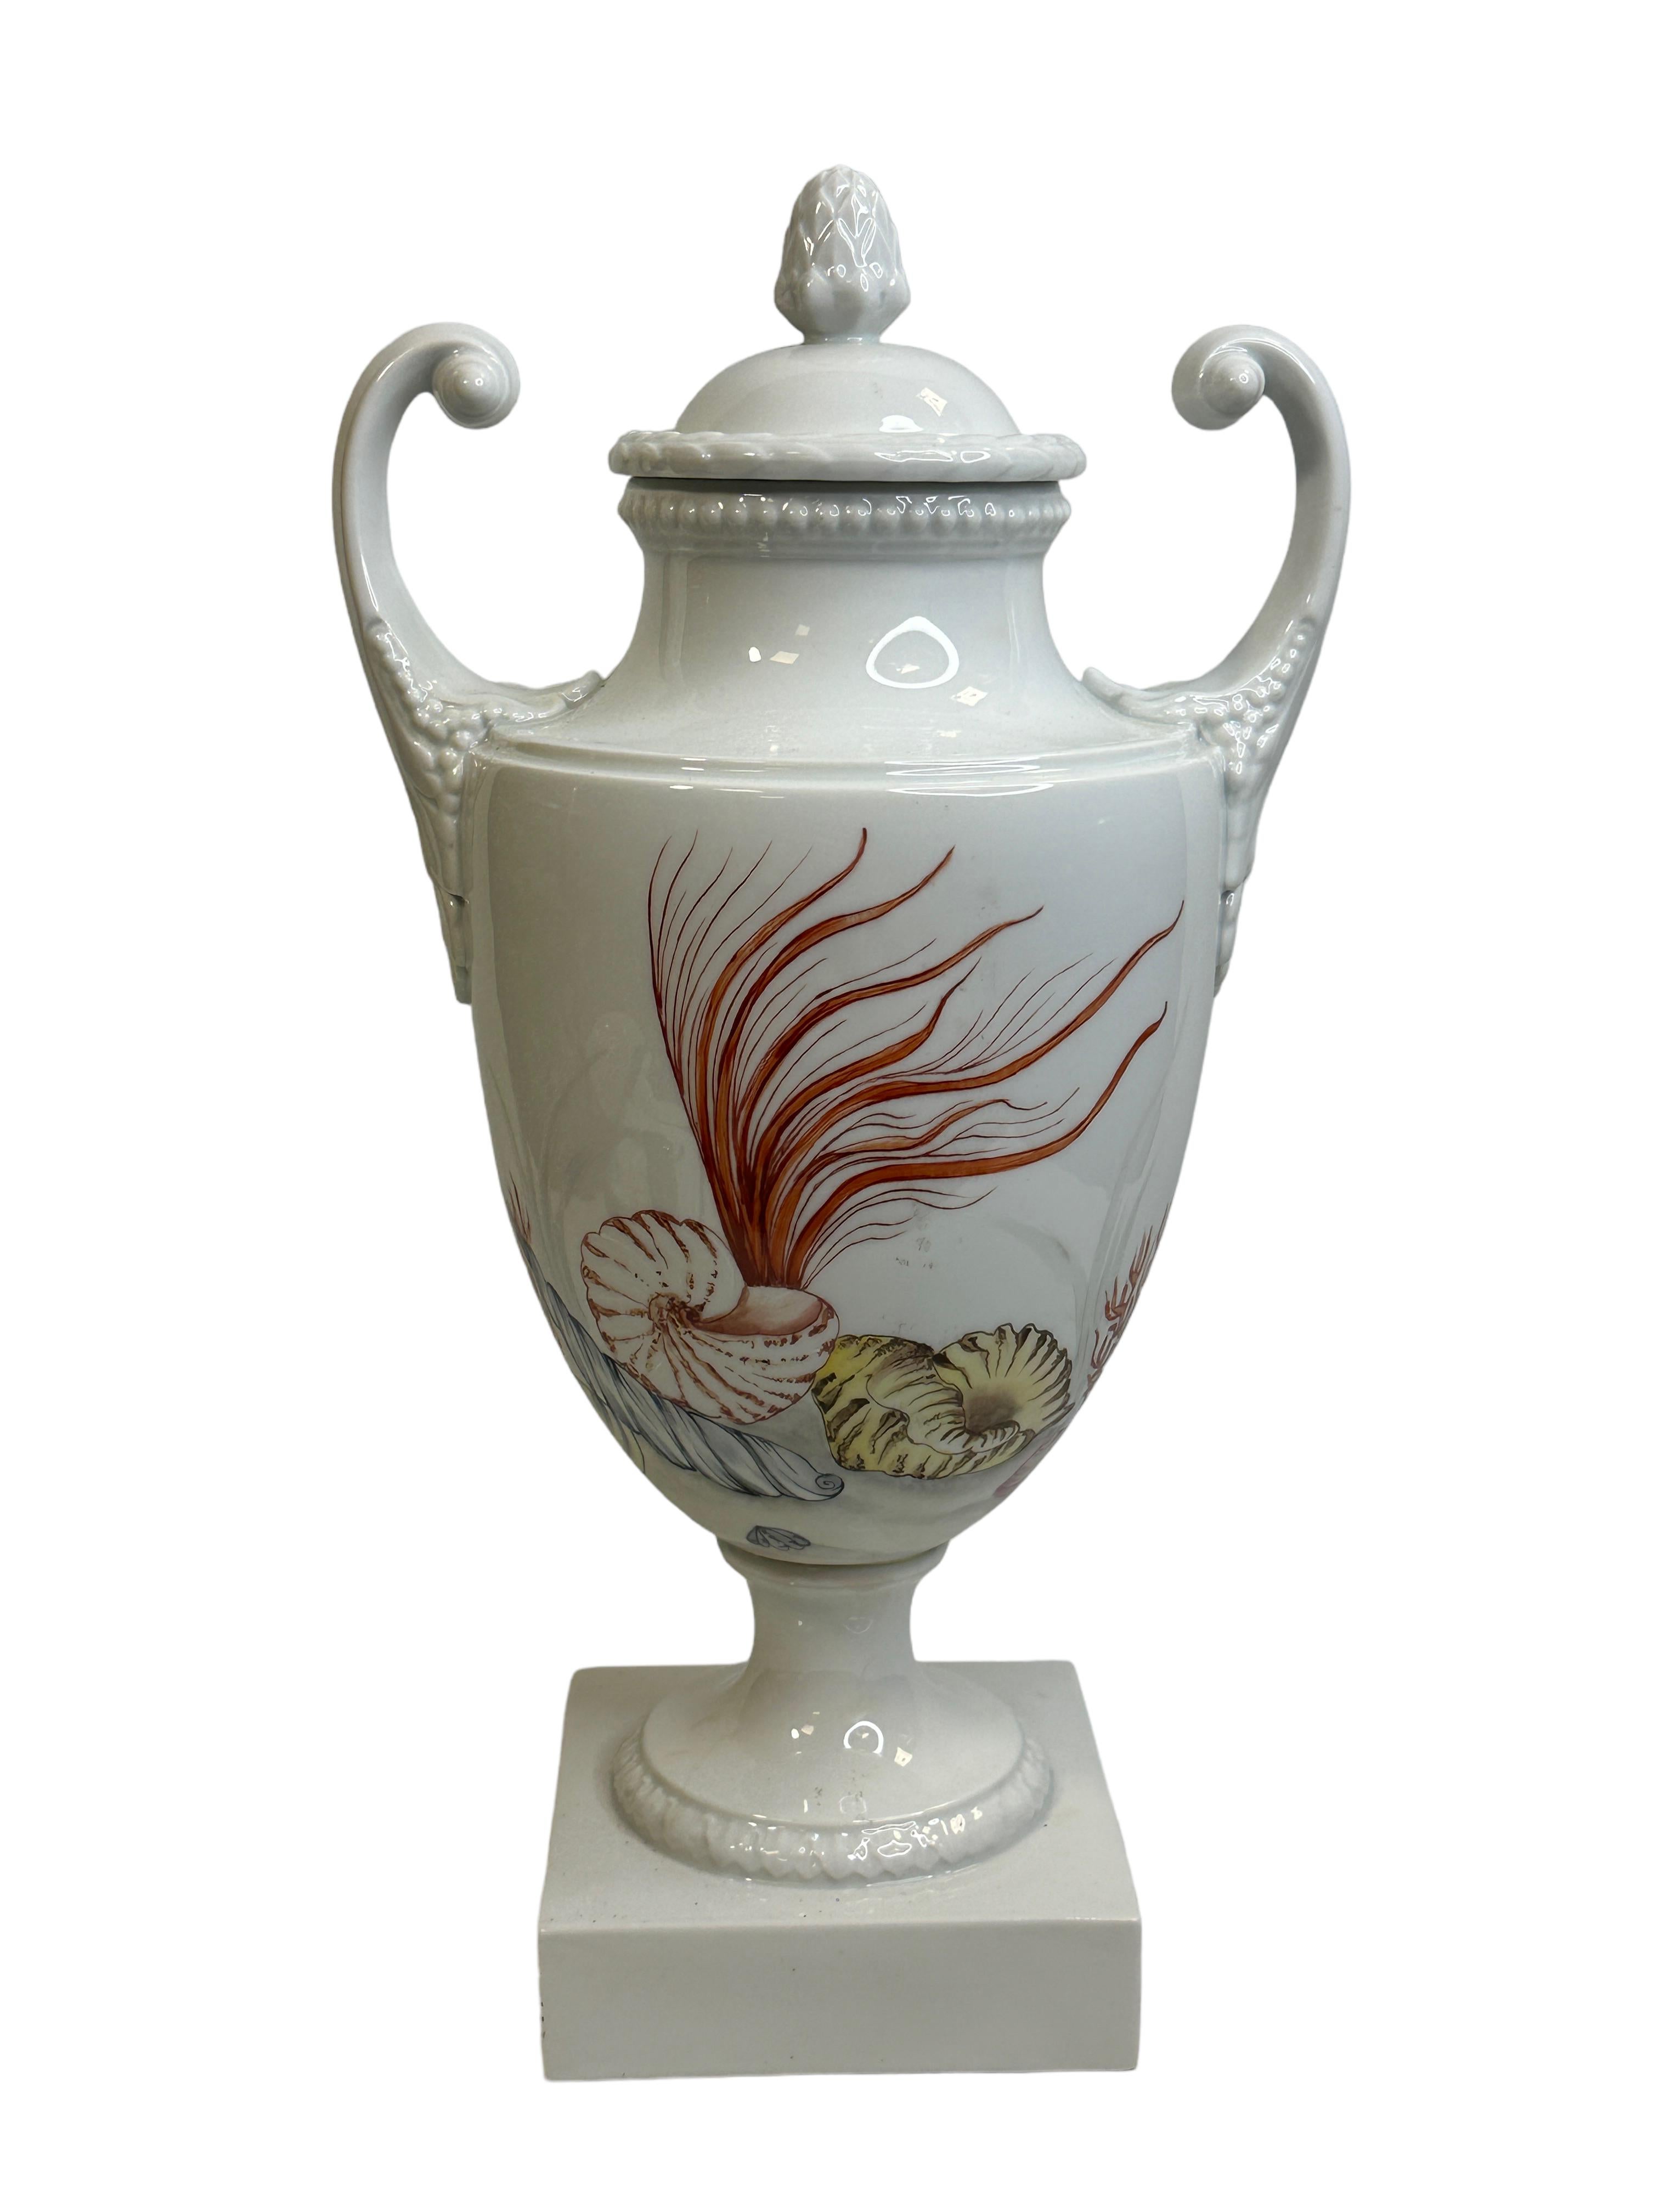 Amphora lidded Vase with Sea Creatures Motif by Lindner Porcelain vintage 1960s For Sale 1